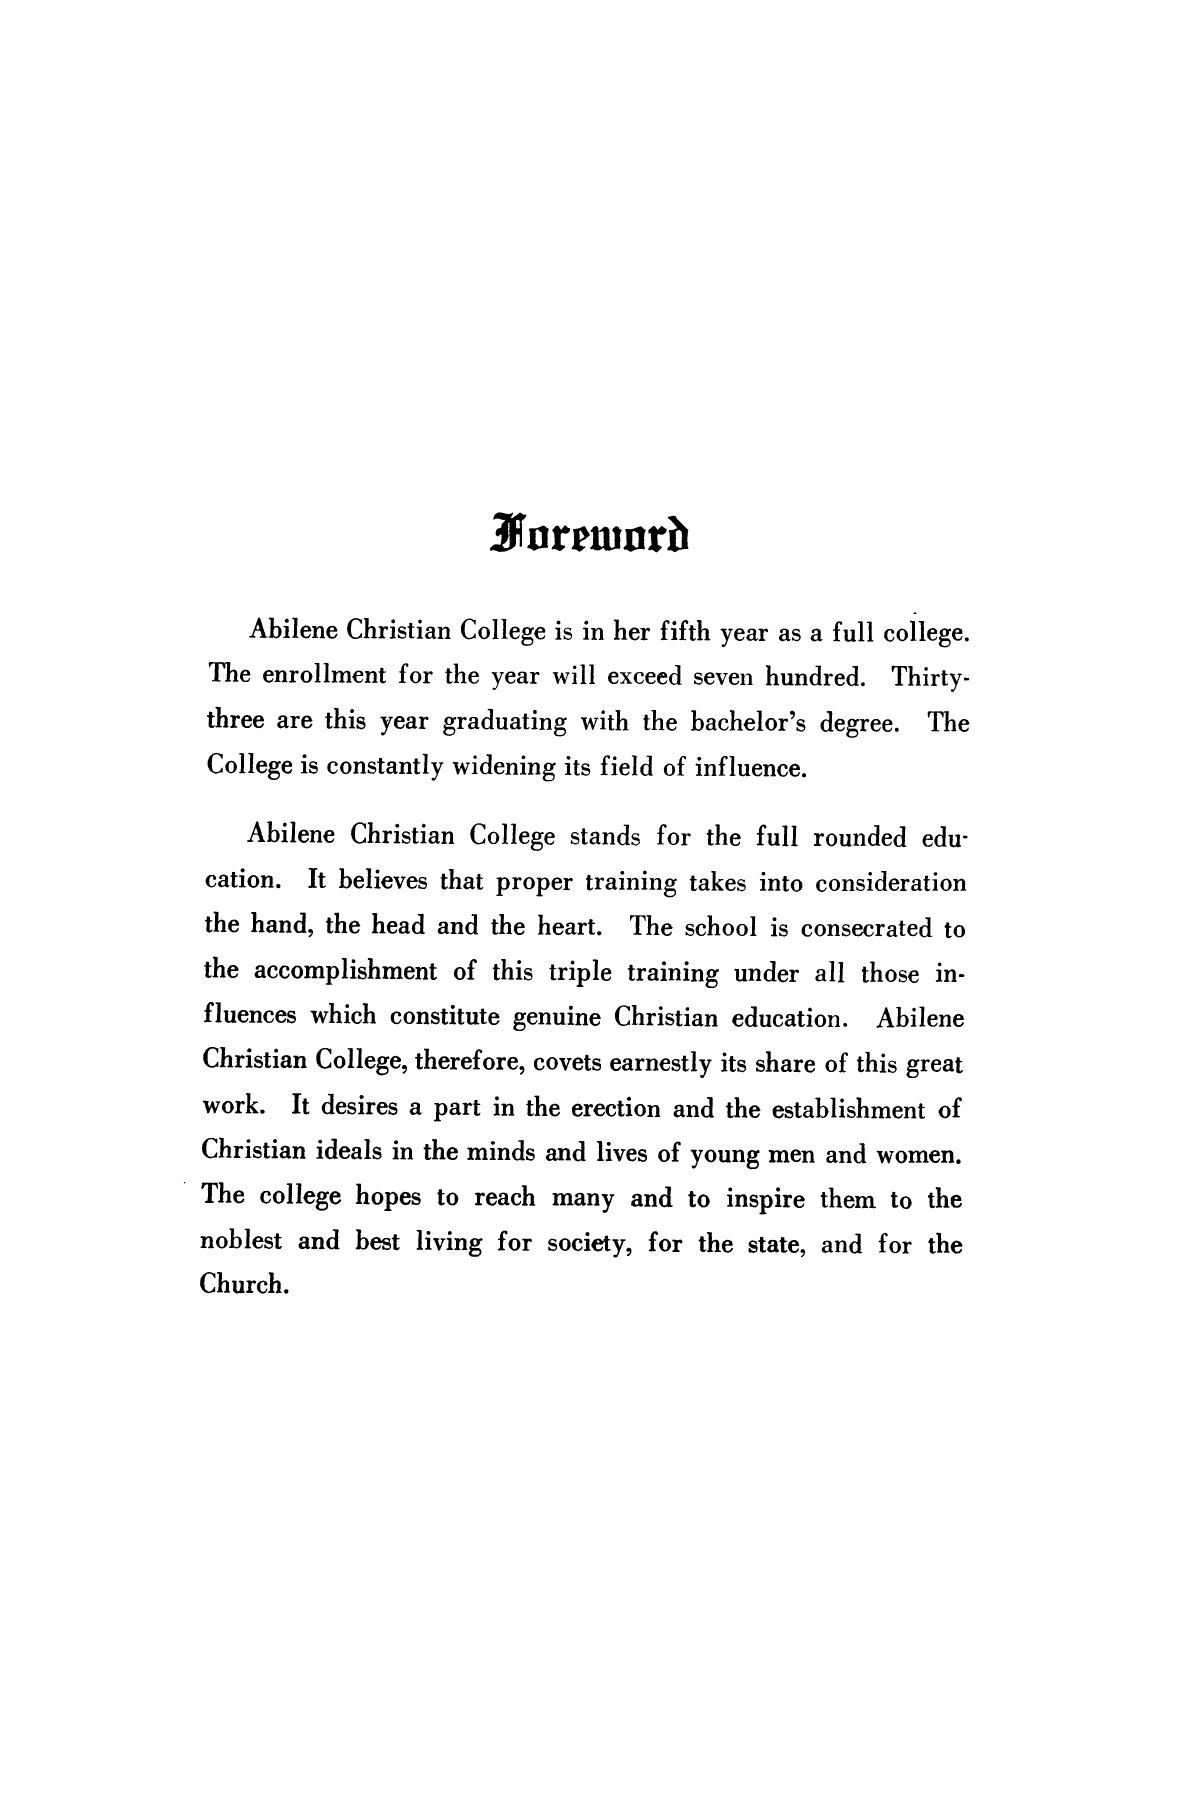 Catalog of Abilene Christian College, 1924-1925
                                                
                                                    4
                                                